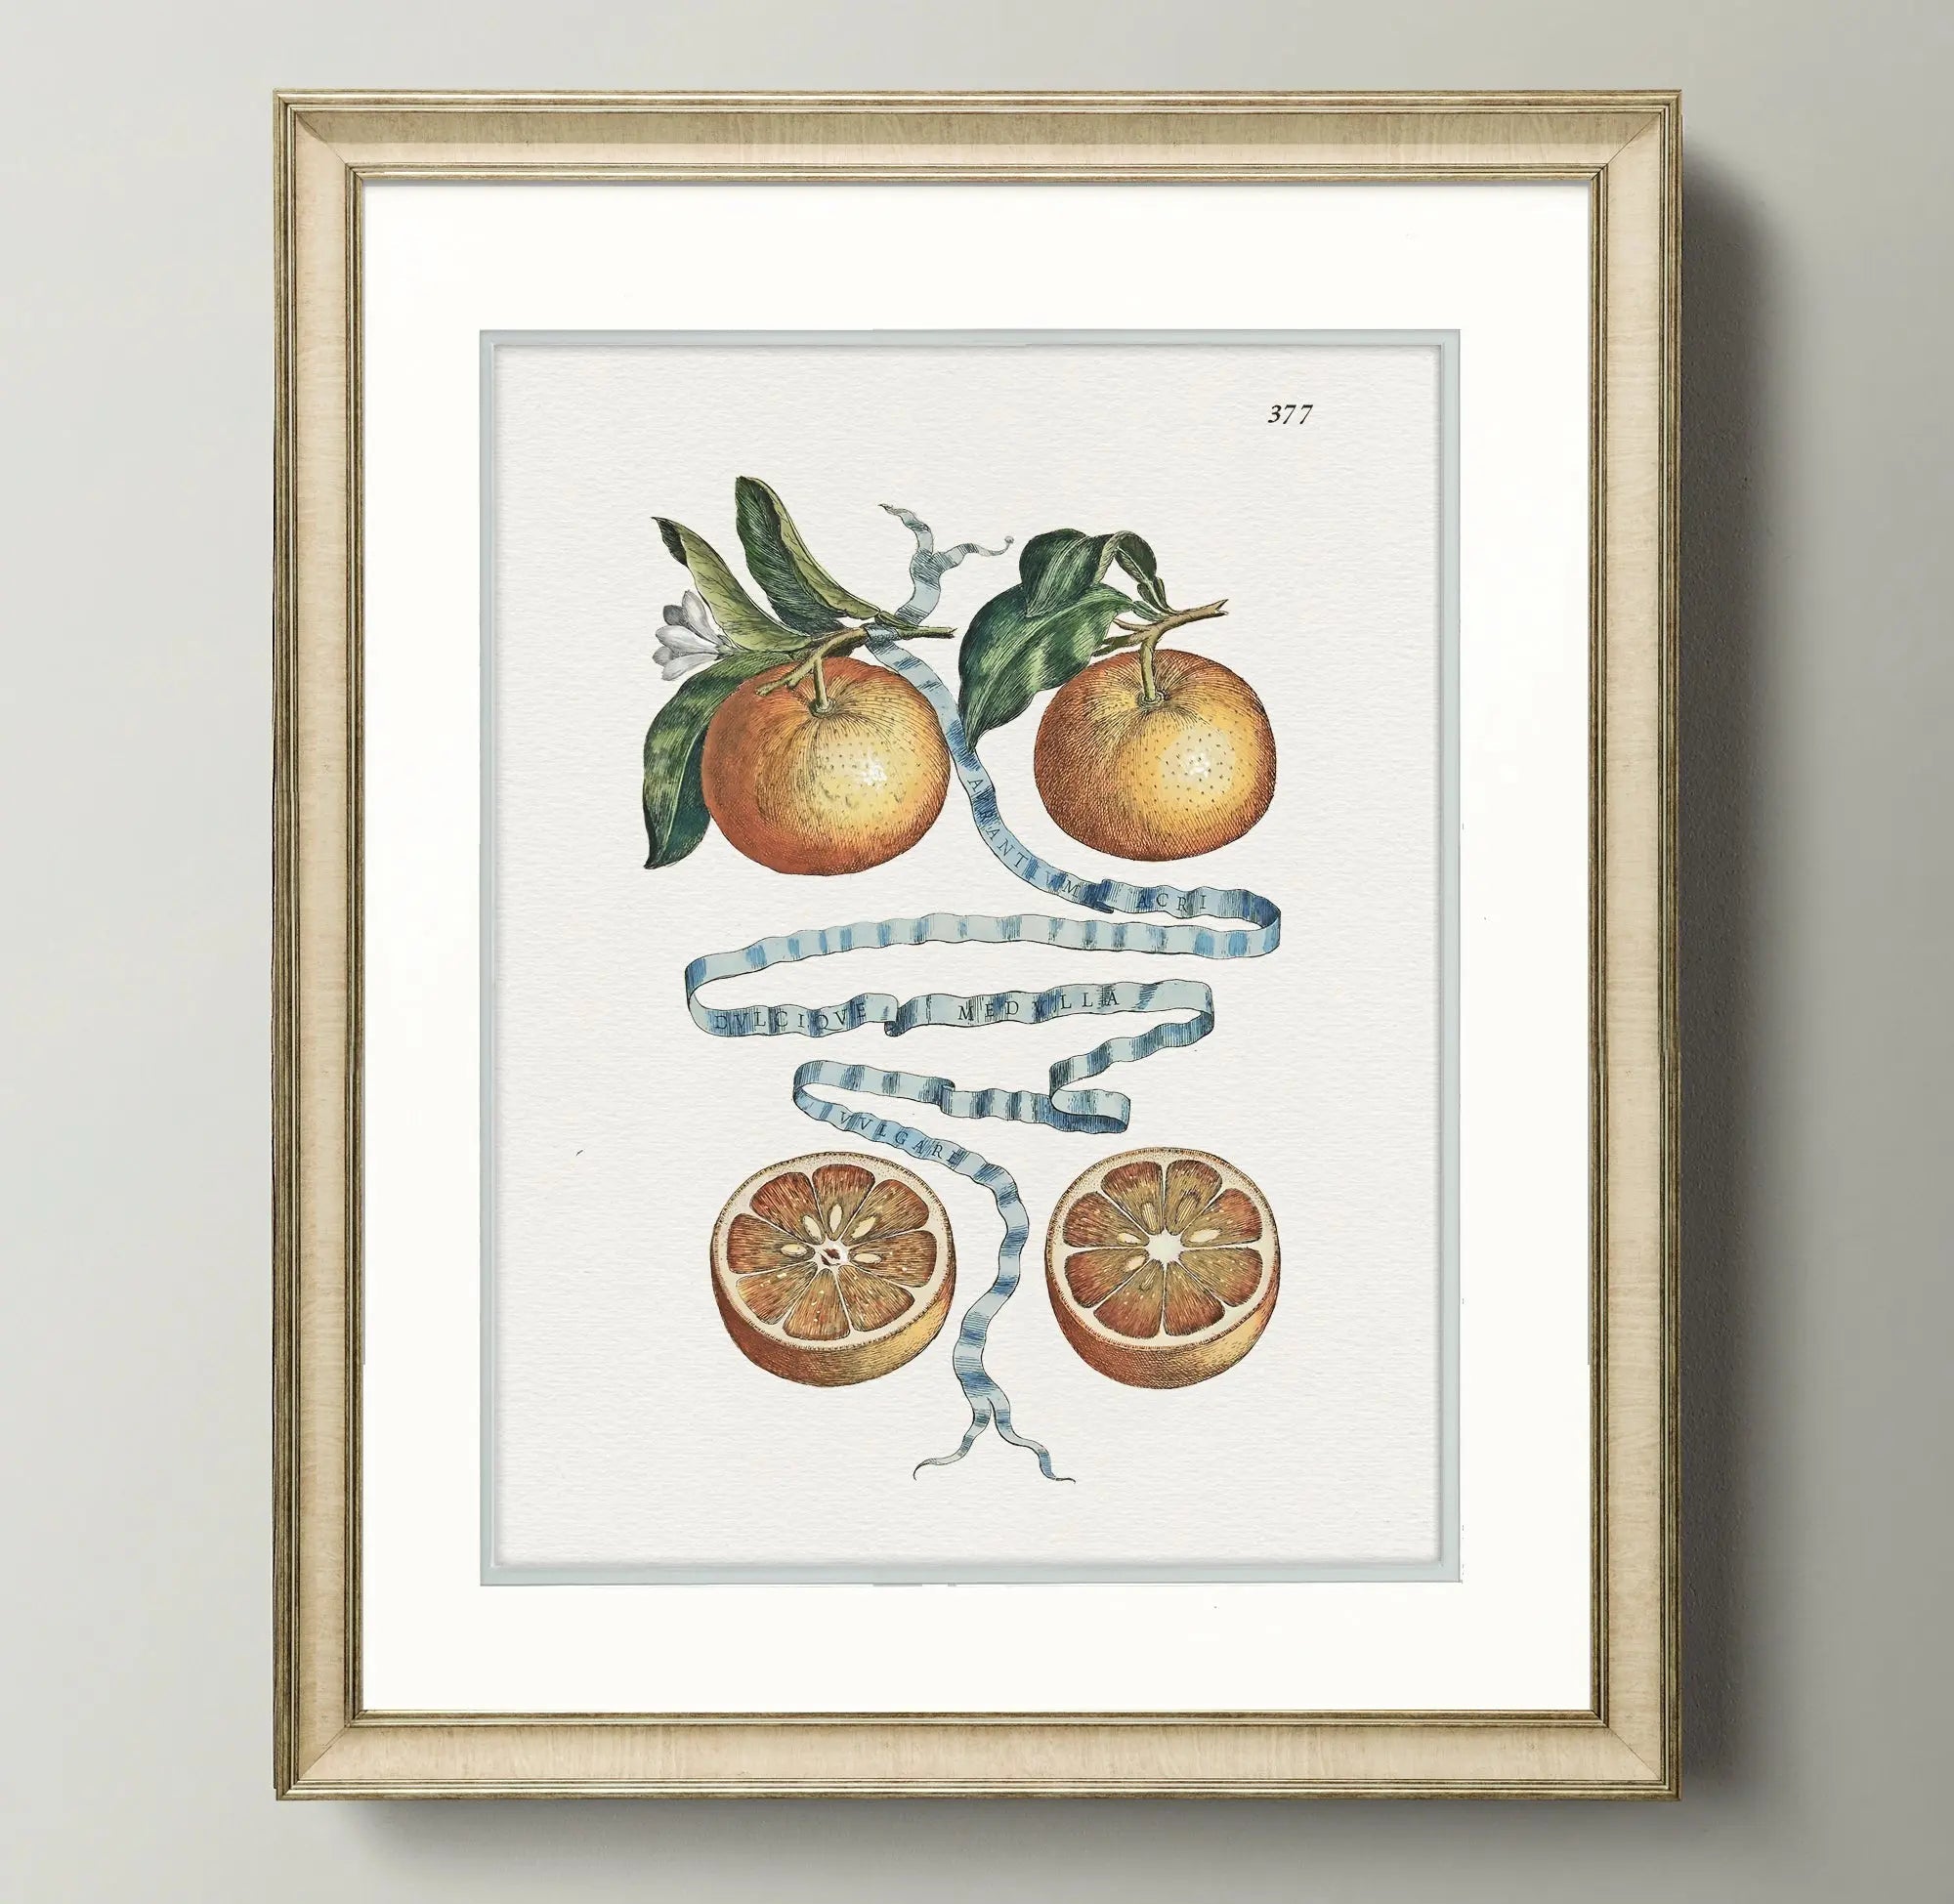 Citrus Botanicals - Two Oranges - Plate 377